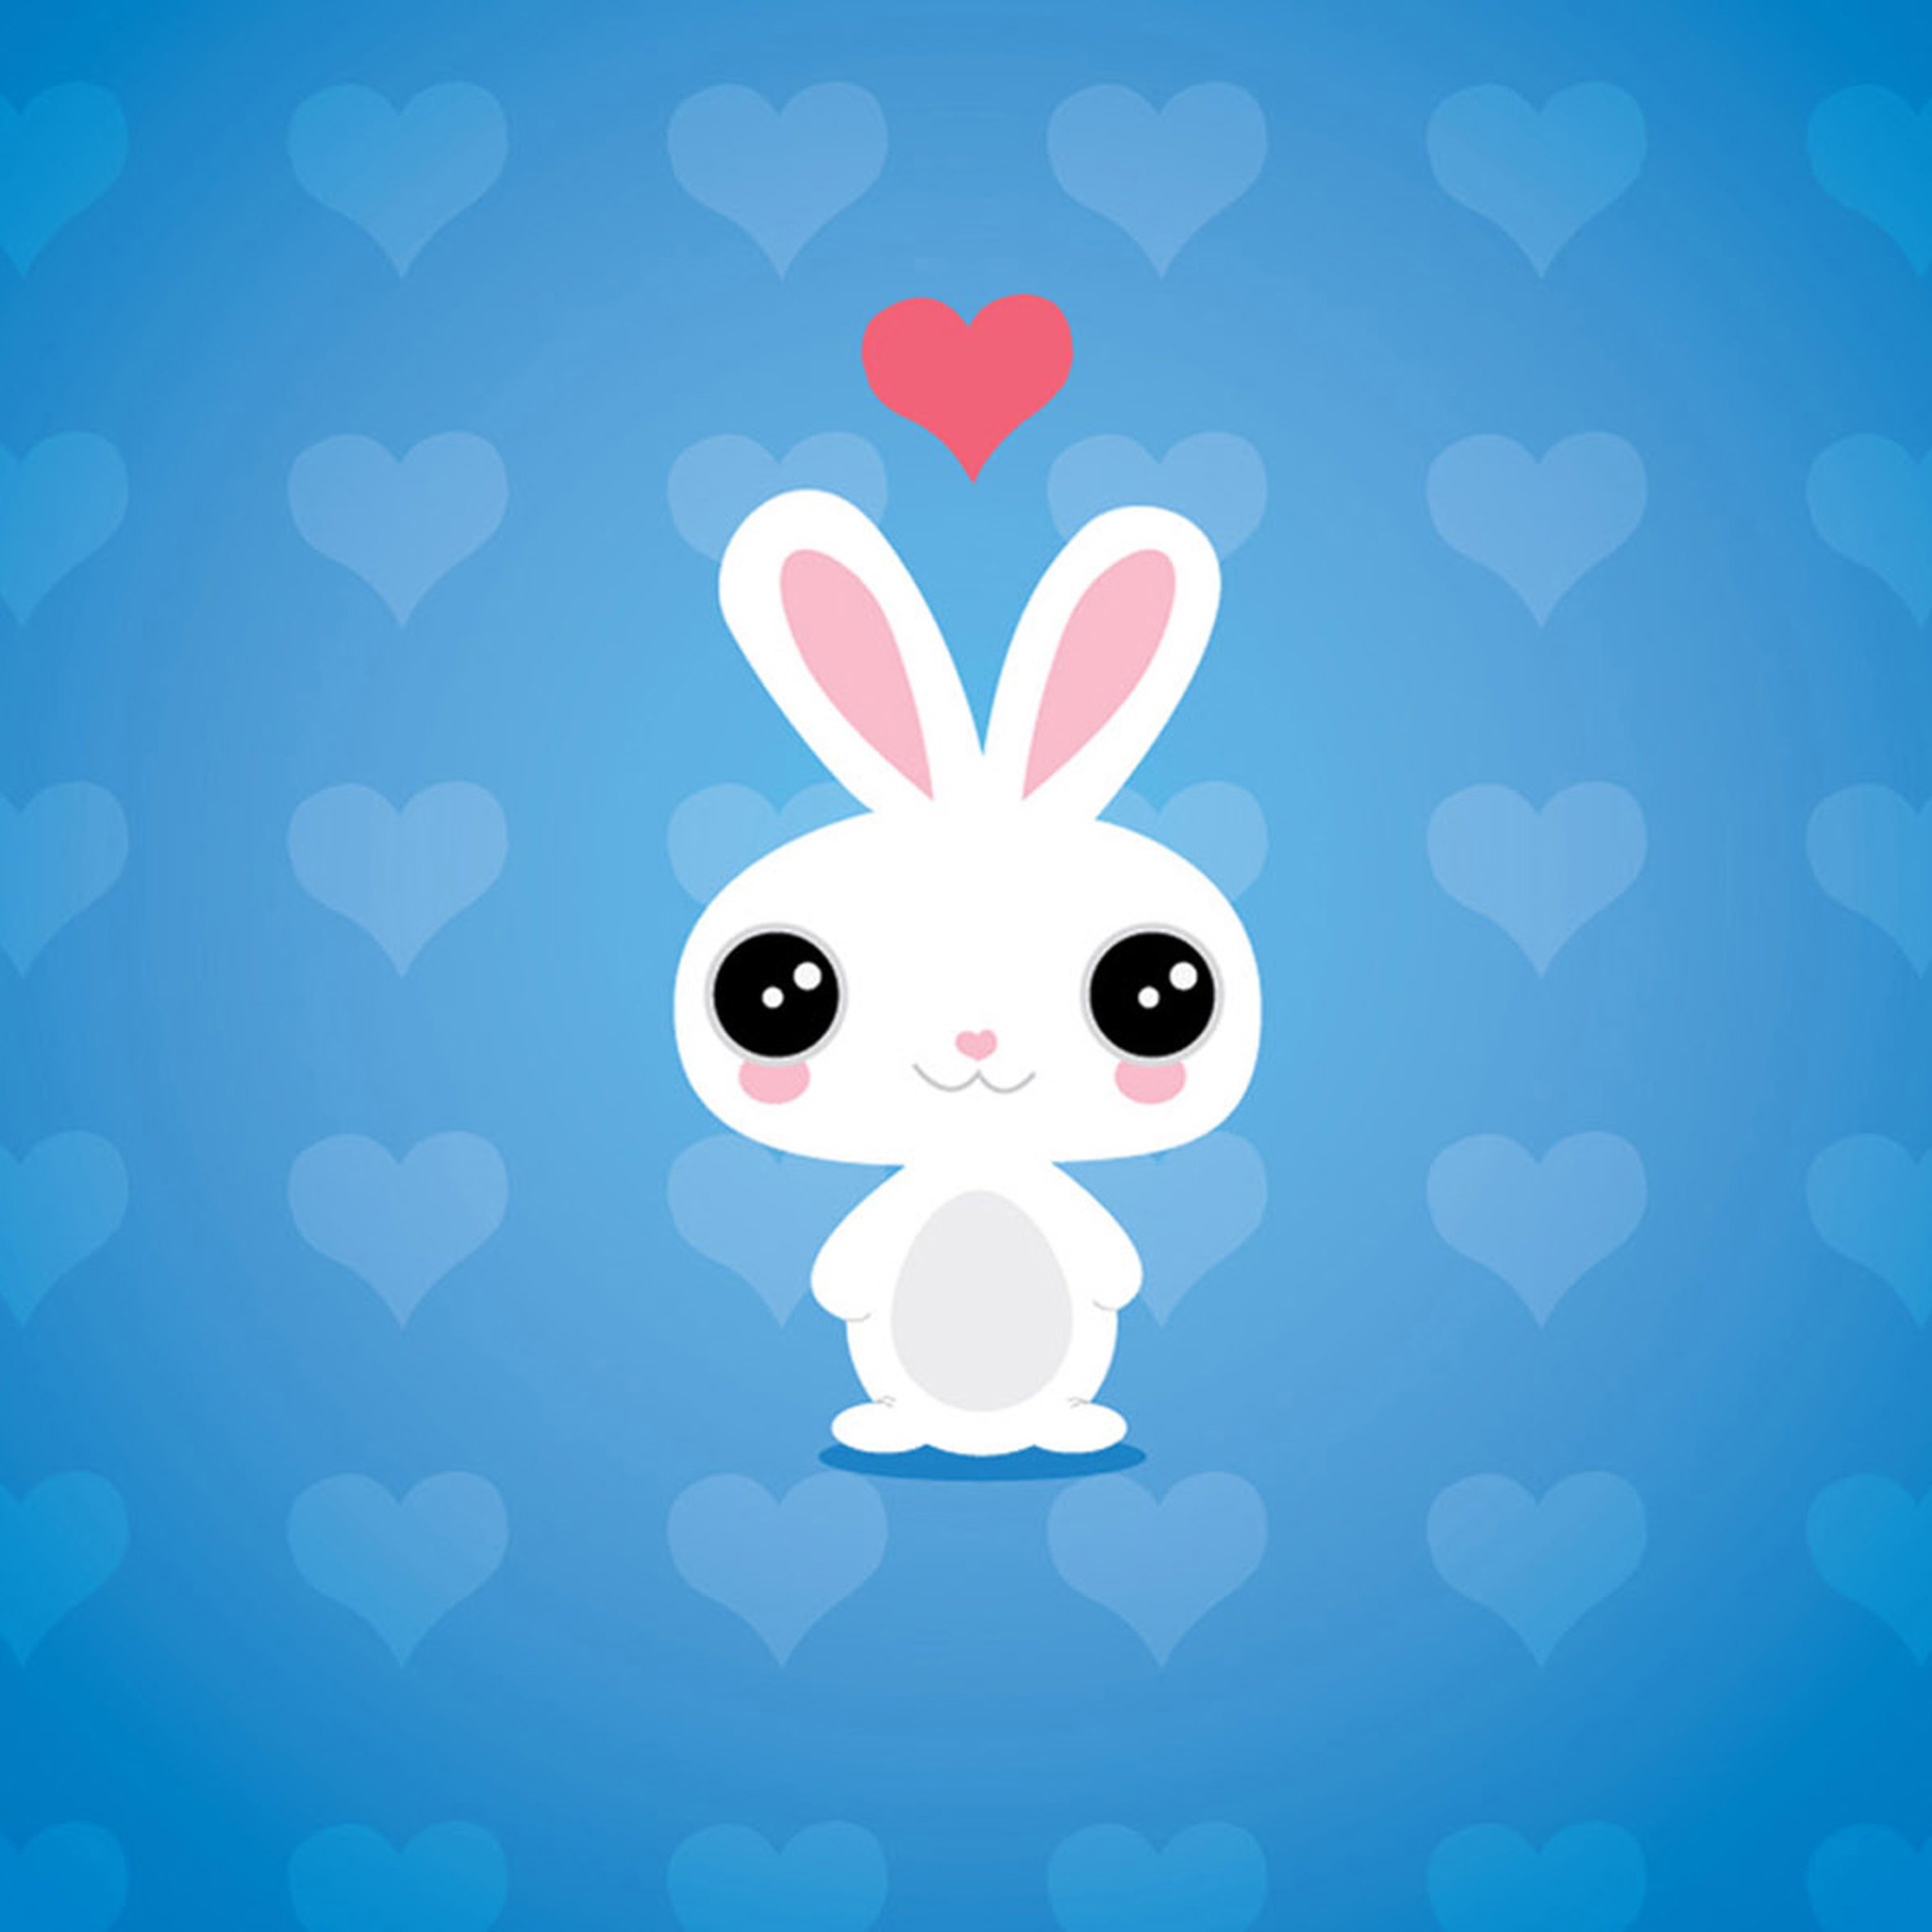 iWallpapers   Cute cartoon rabbit wallpaper iPad air 2